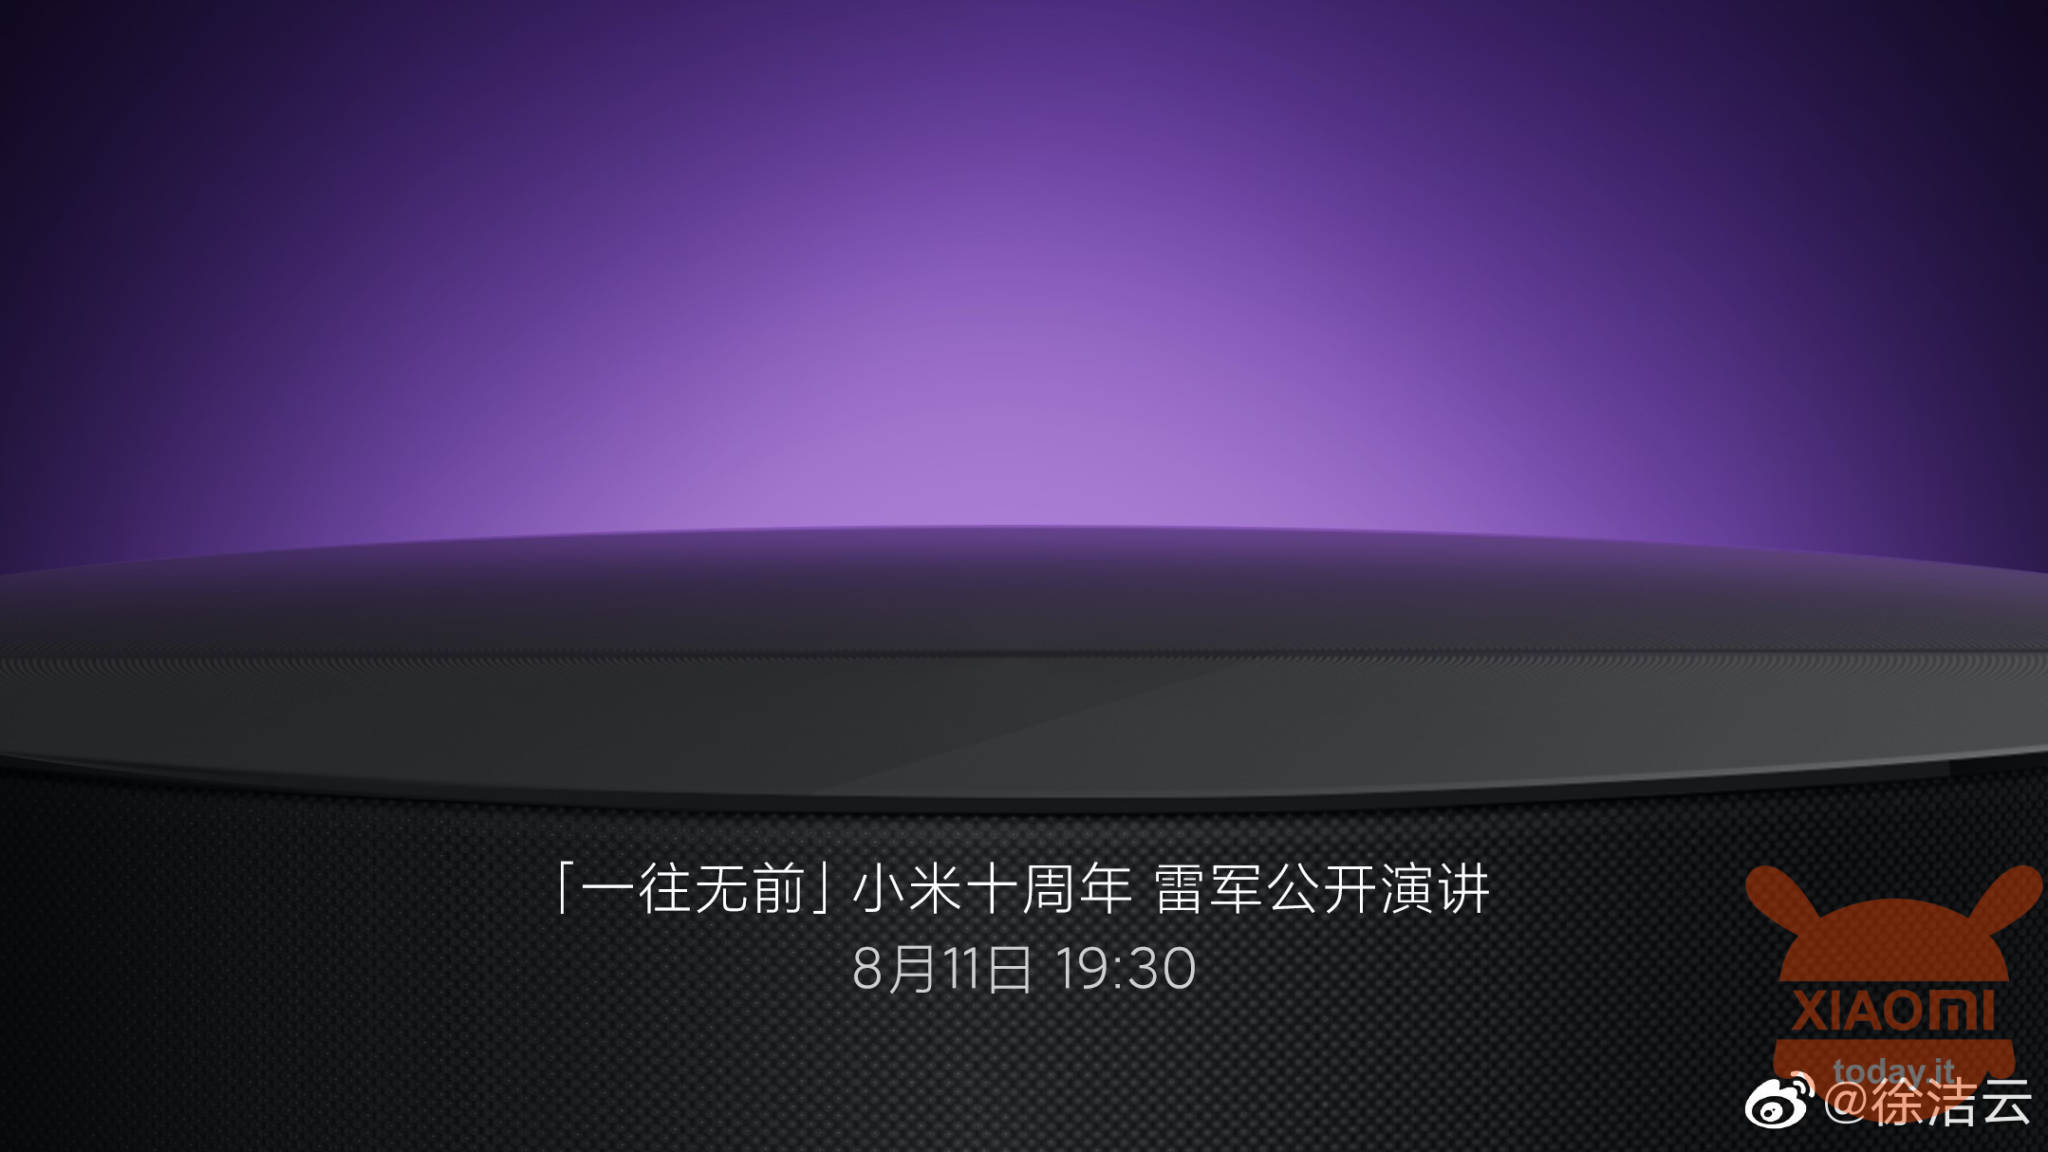 Xiaomi Mi TV Guru Ultra